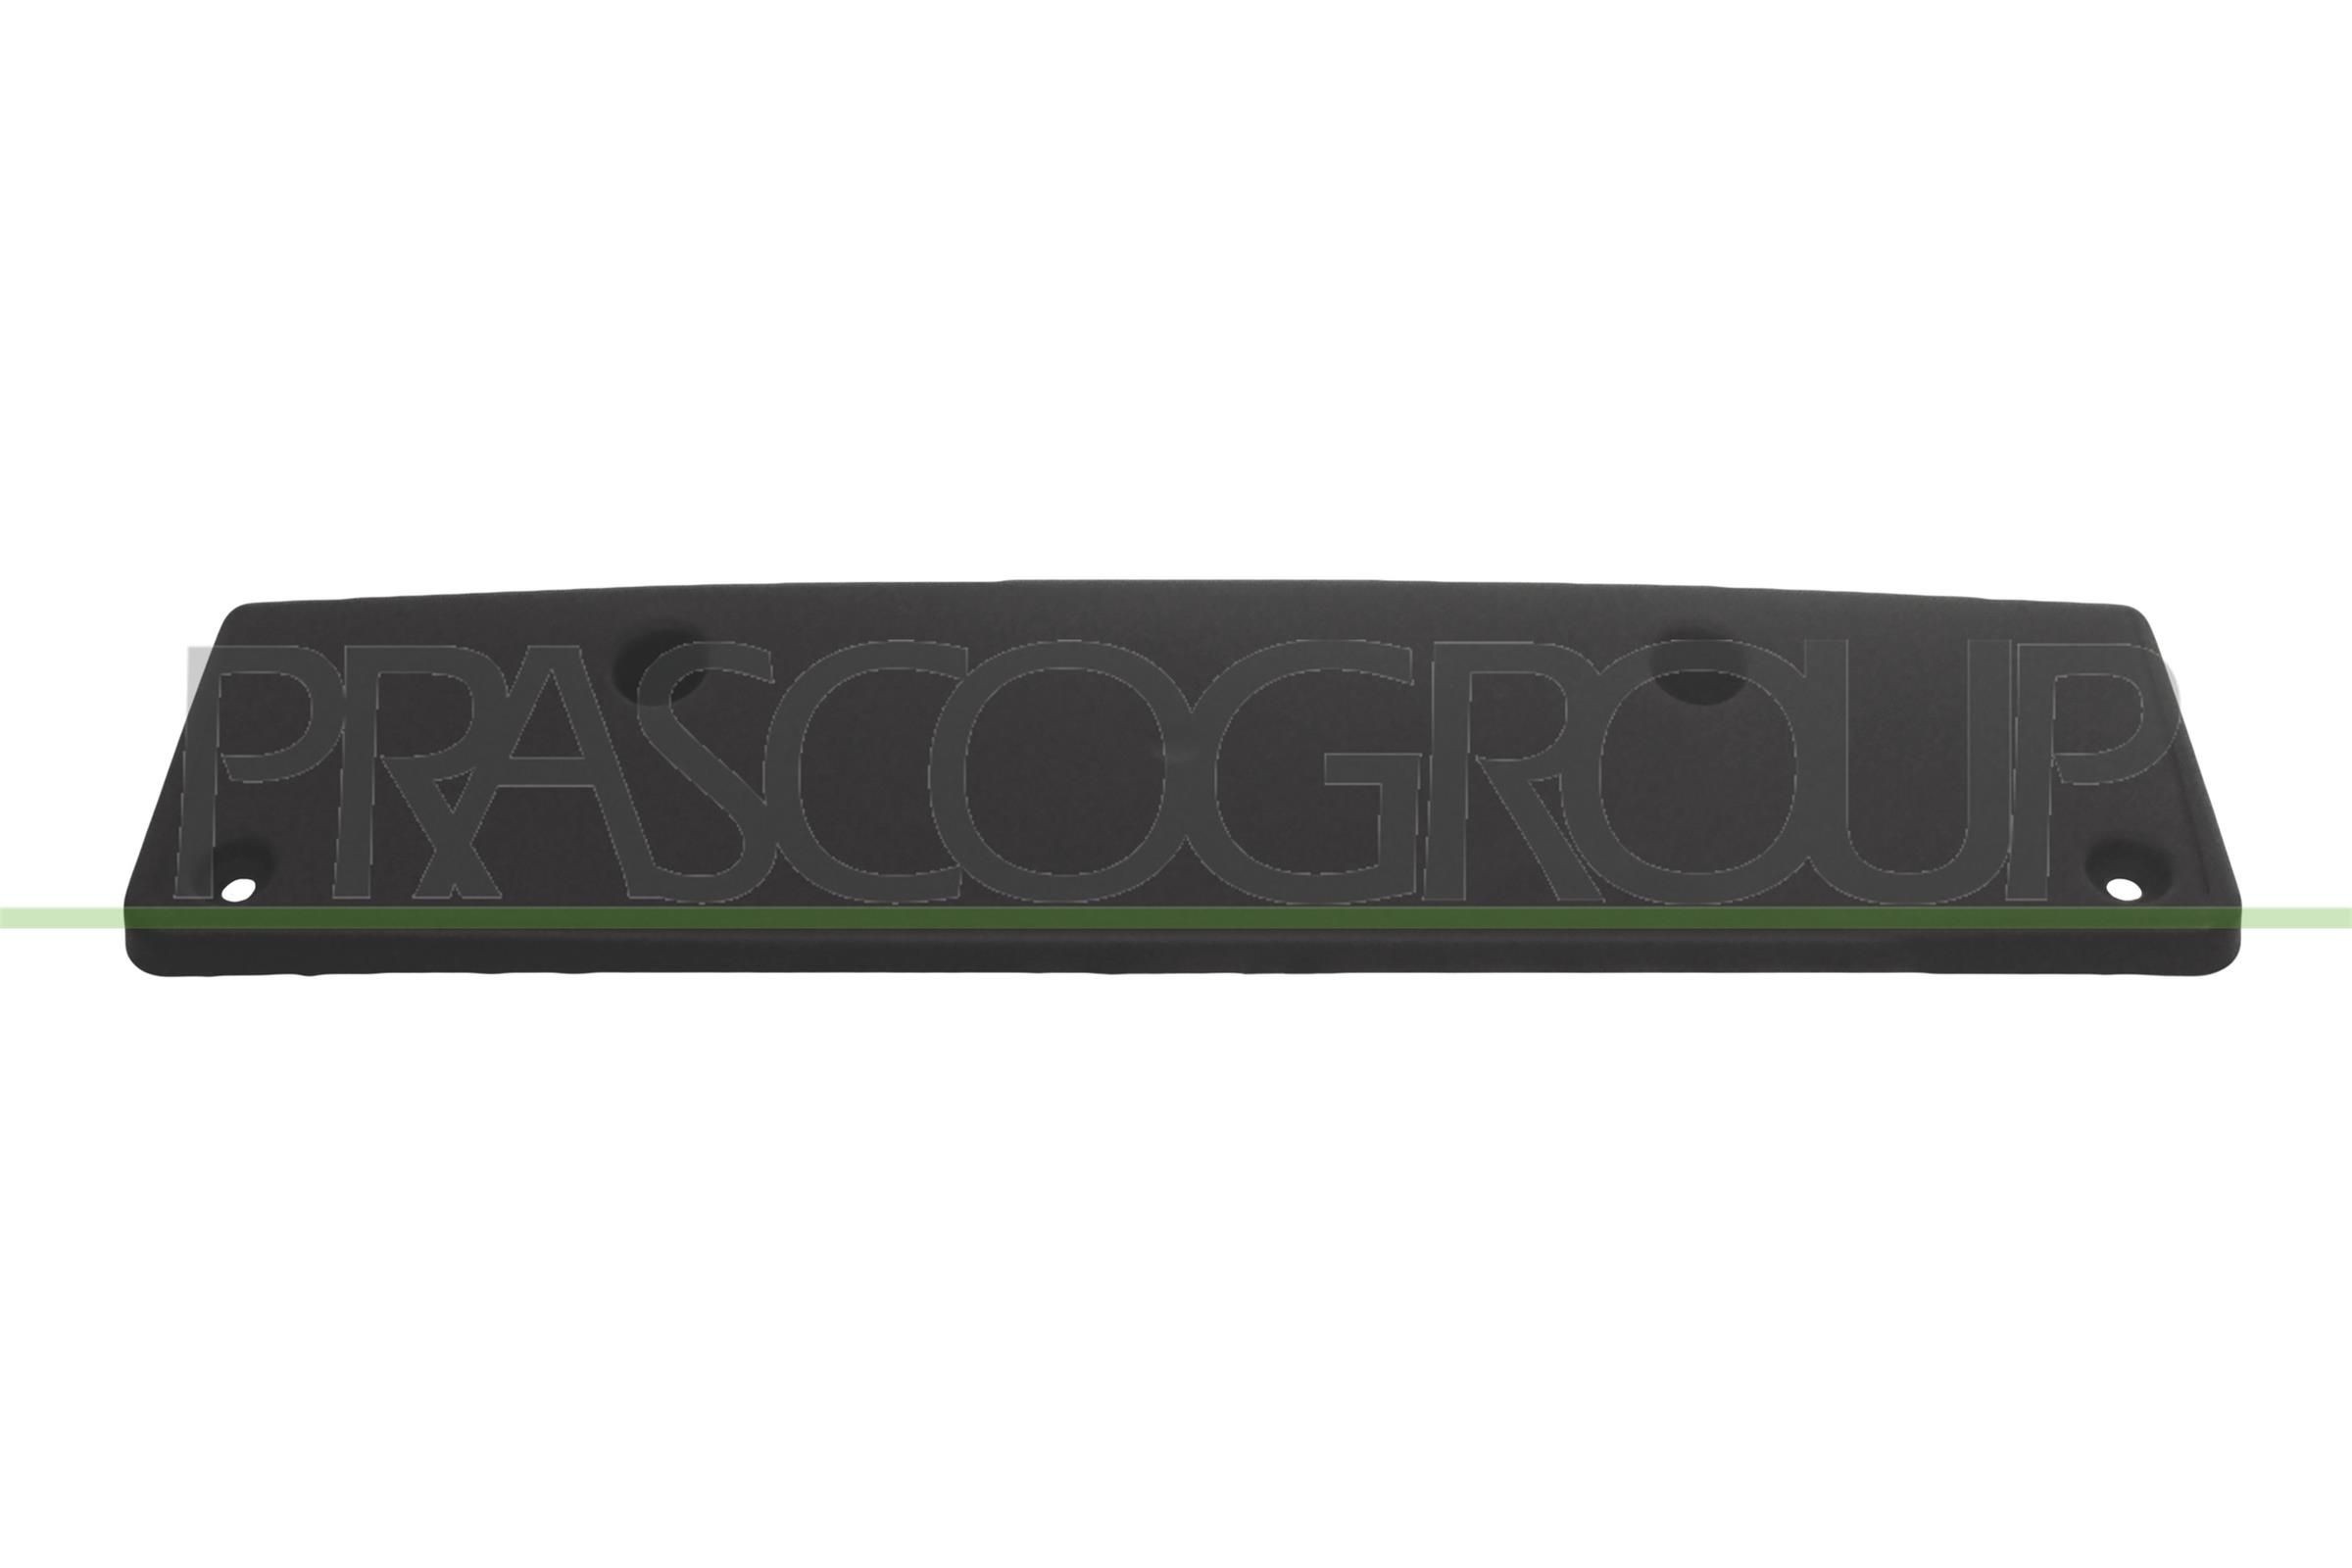 PRASCO Licence plate holder / bracket Passat 3g5 new VG0941539